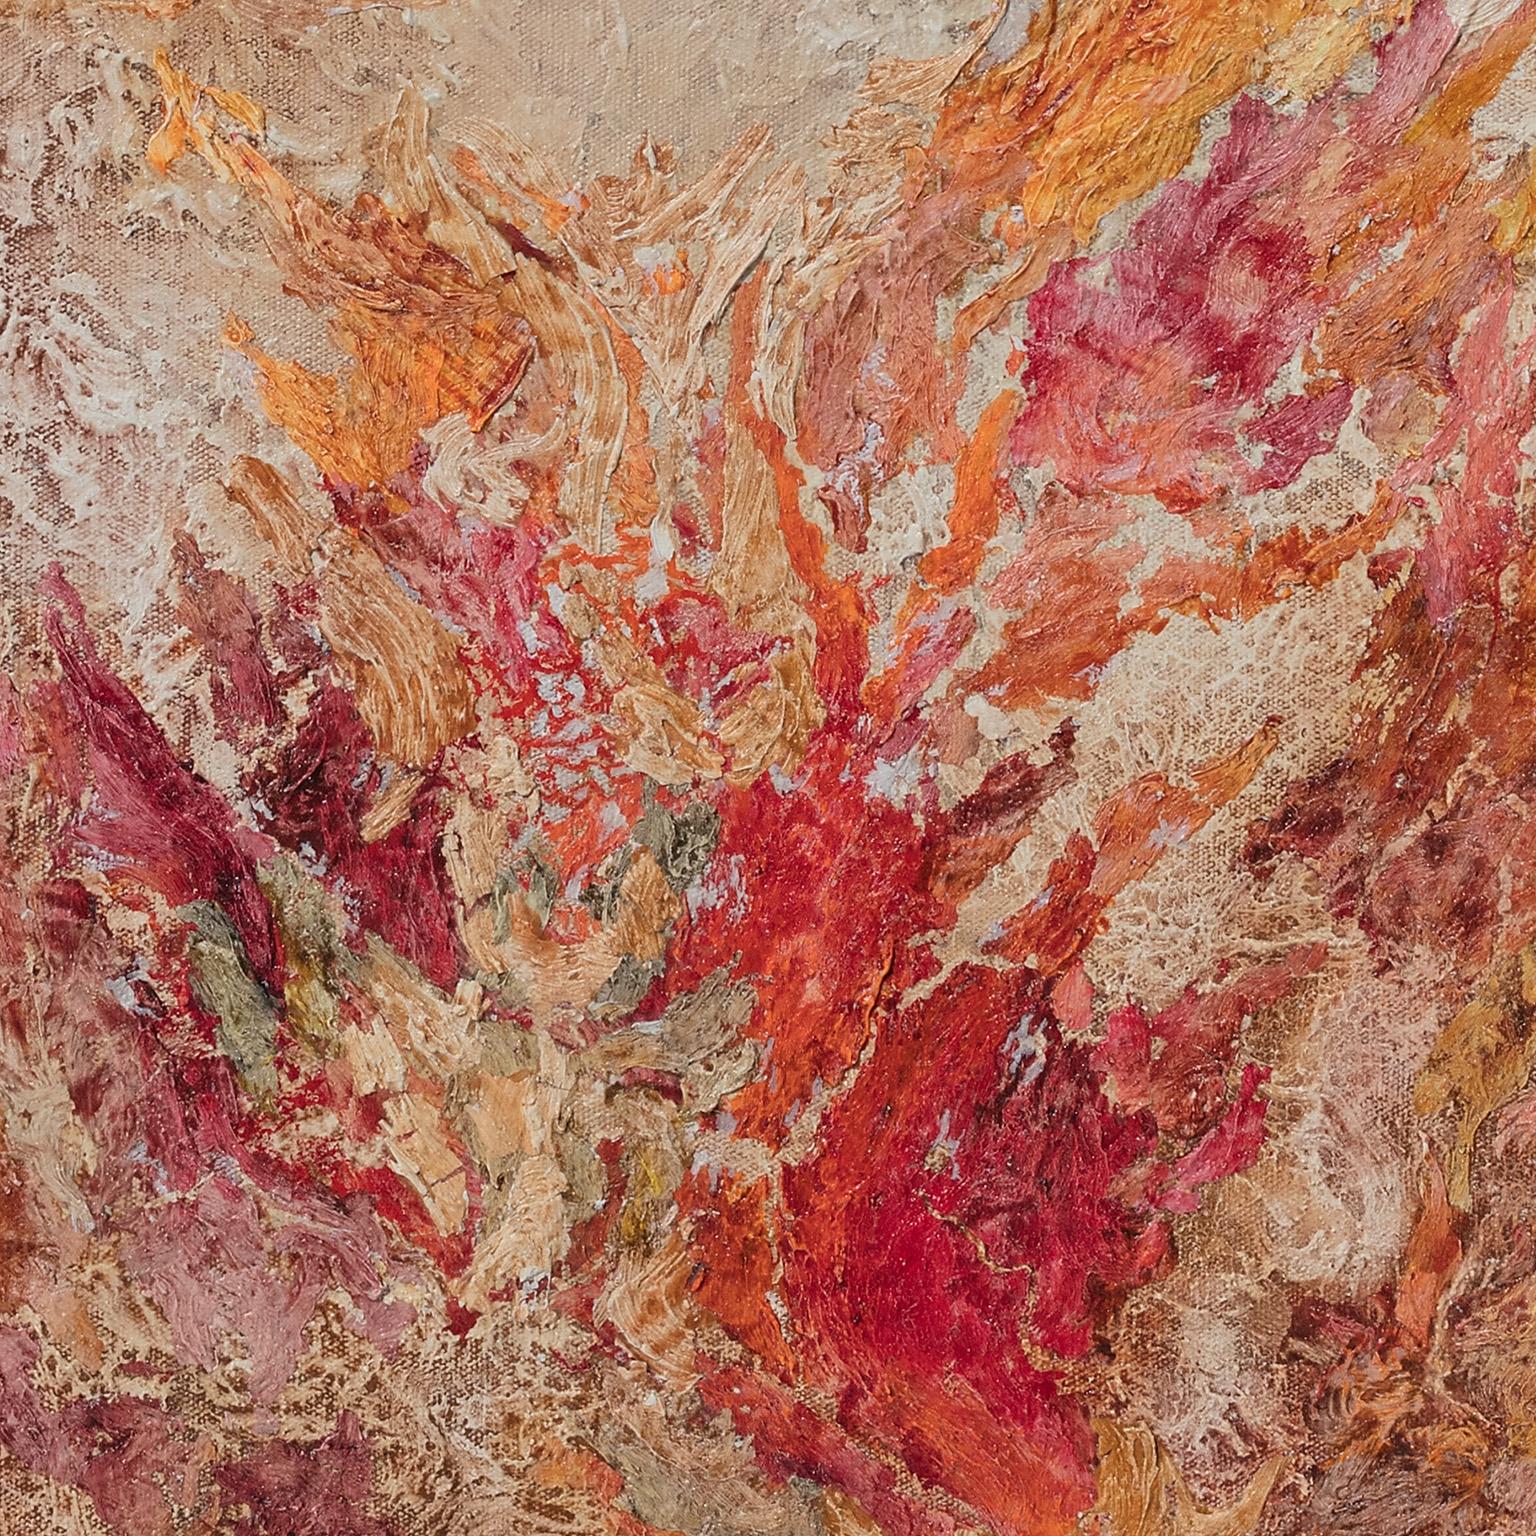 Von Matter bis Energie - Abstraktes expressionistisches Gemälde mit pastellfarbenen warmen Farben – Painting von Ruggero Vanni